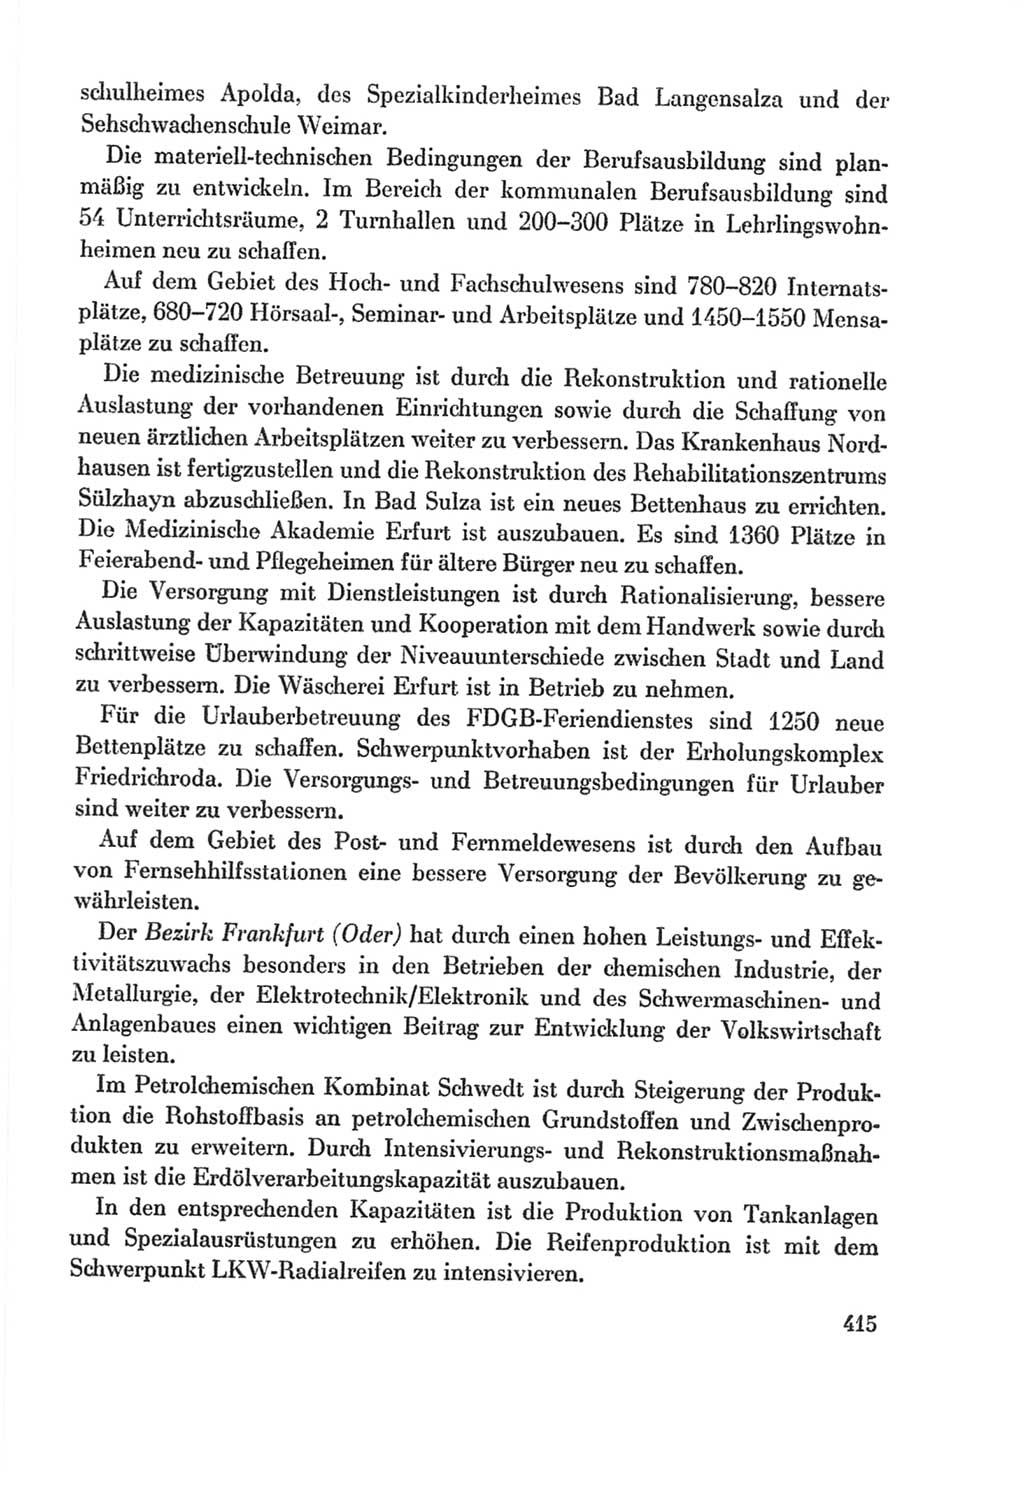 Protokoll der Verhandlungen des Ⅸ. Parteitages der Sozialistischen Einheitspartei Deutschlands (SED) [Deutsche Demokratische Republik (DDR)] 1976, Band 2, Seite 415 (Prot. Verh. Ⅸ. PT SED DDR 1976, Bd. 2, S. 415)